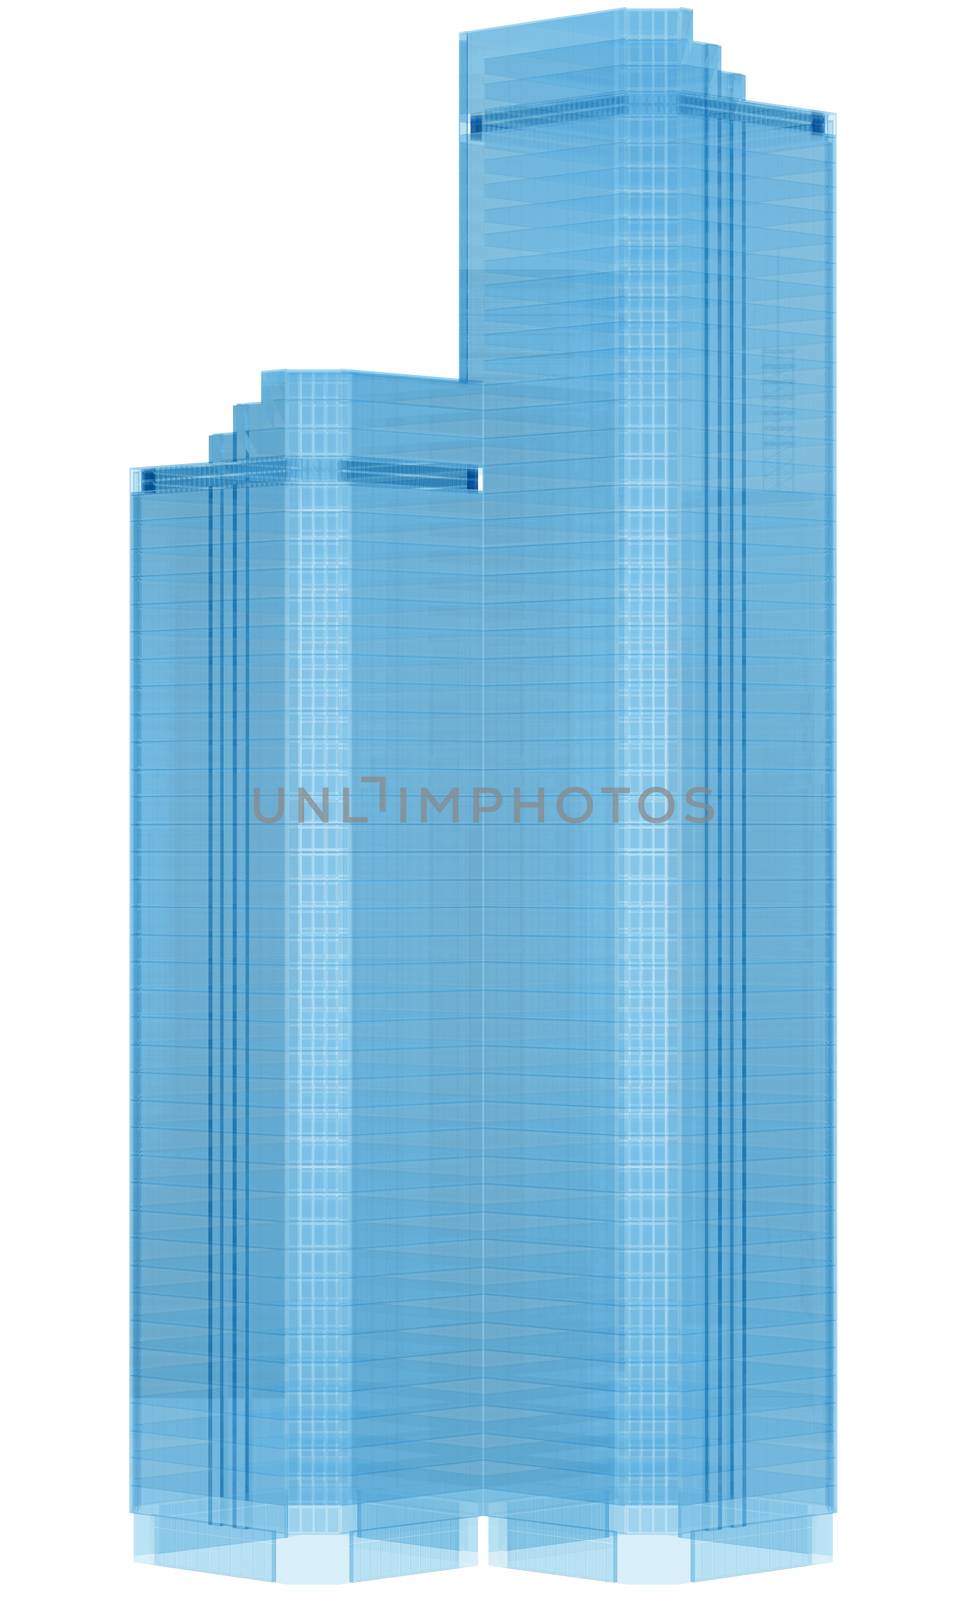 Glass skyscraper by cherezoff